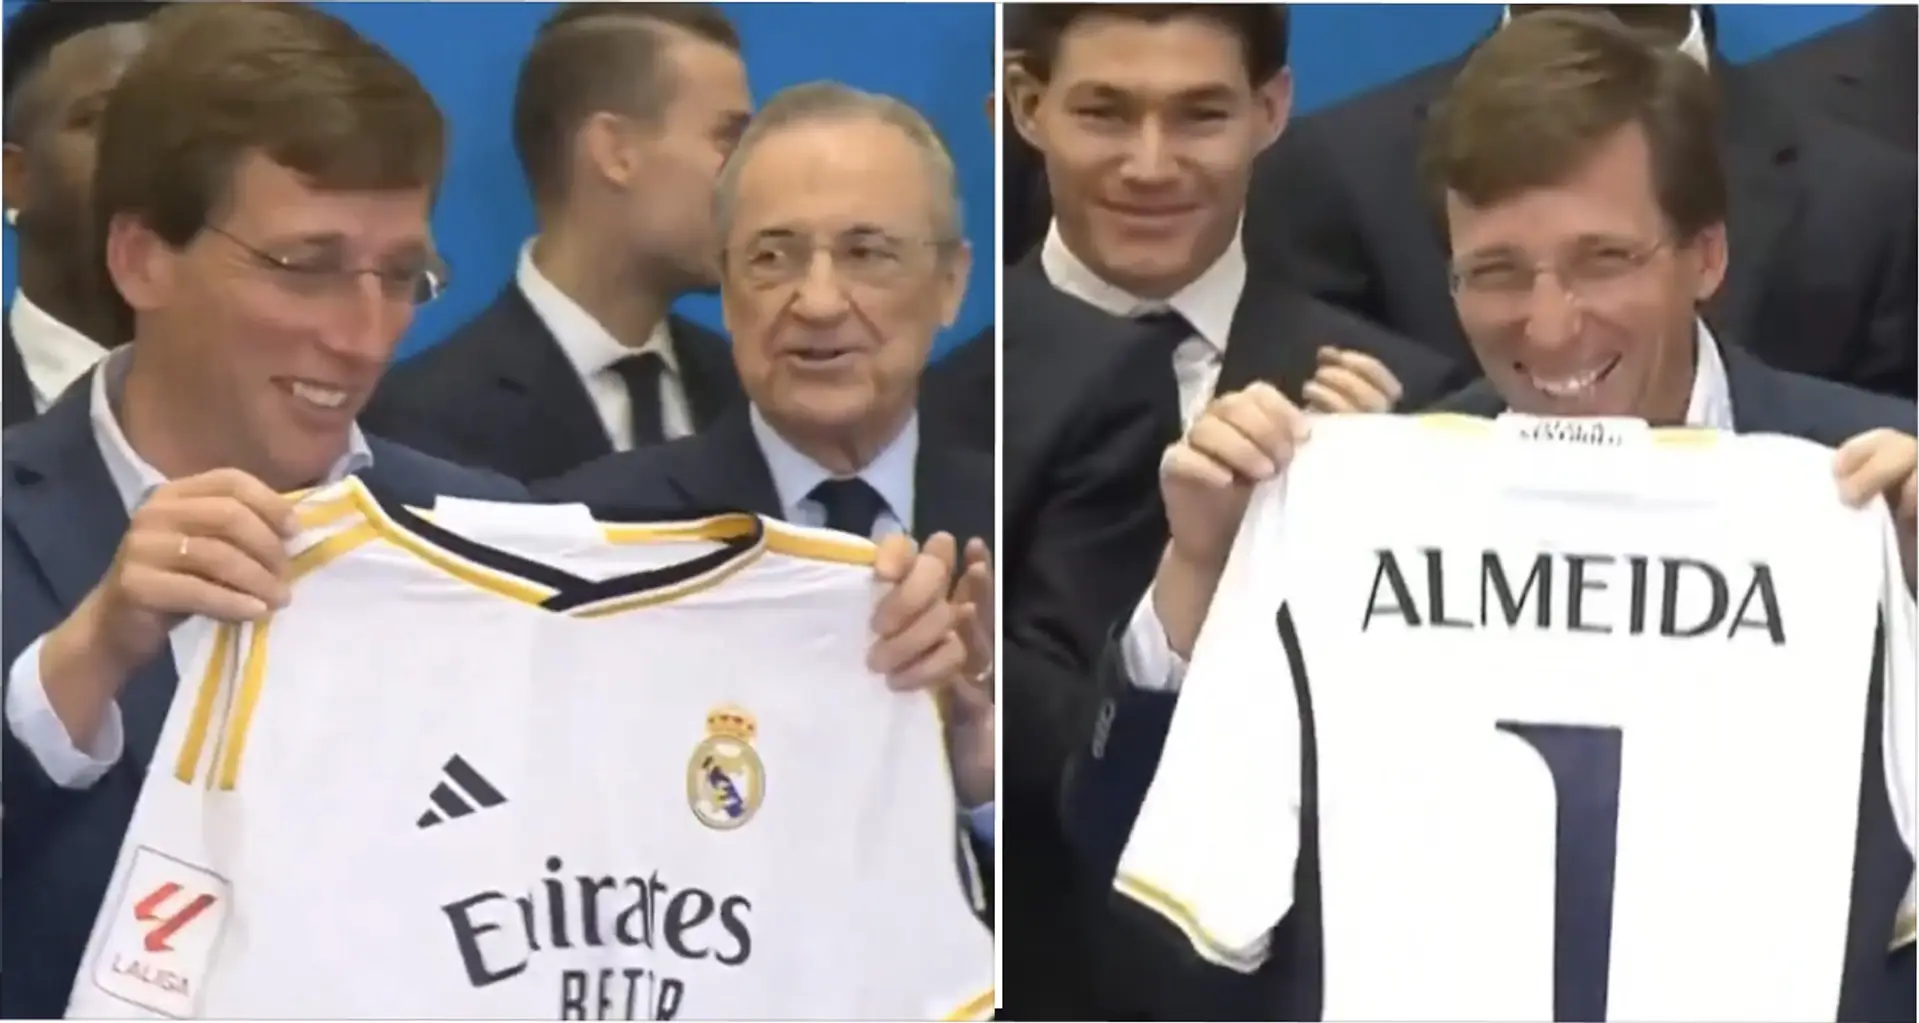 Real Madrid – he's Atletico fan